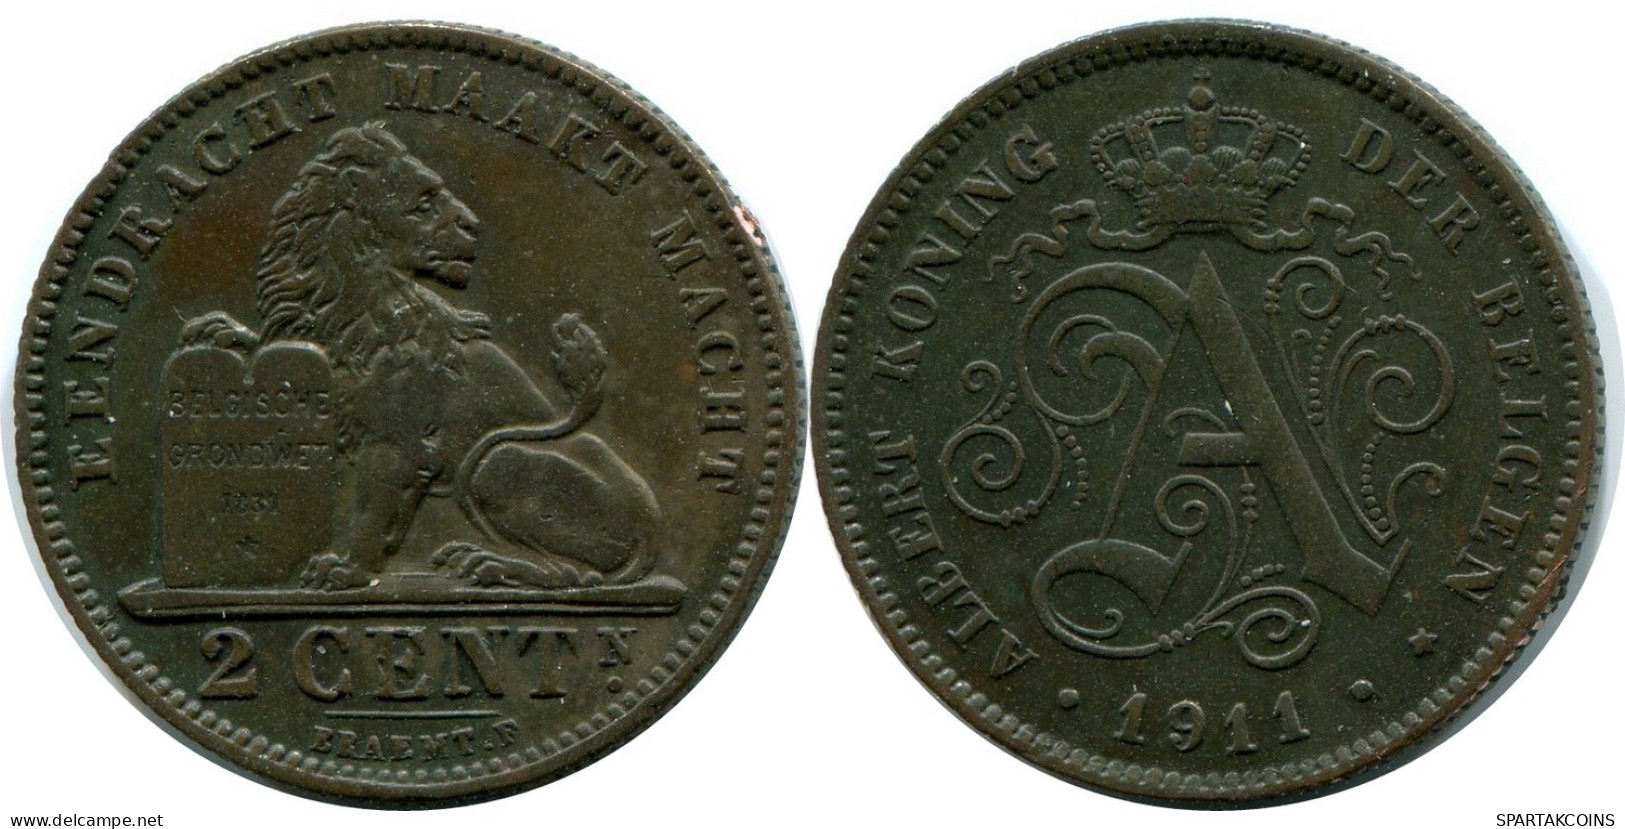 2 CENTIMES 1911 BELGIUM Coin DUTCH Text #AX361.U.A - 2 Cent